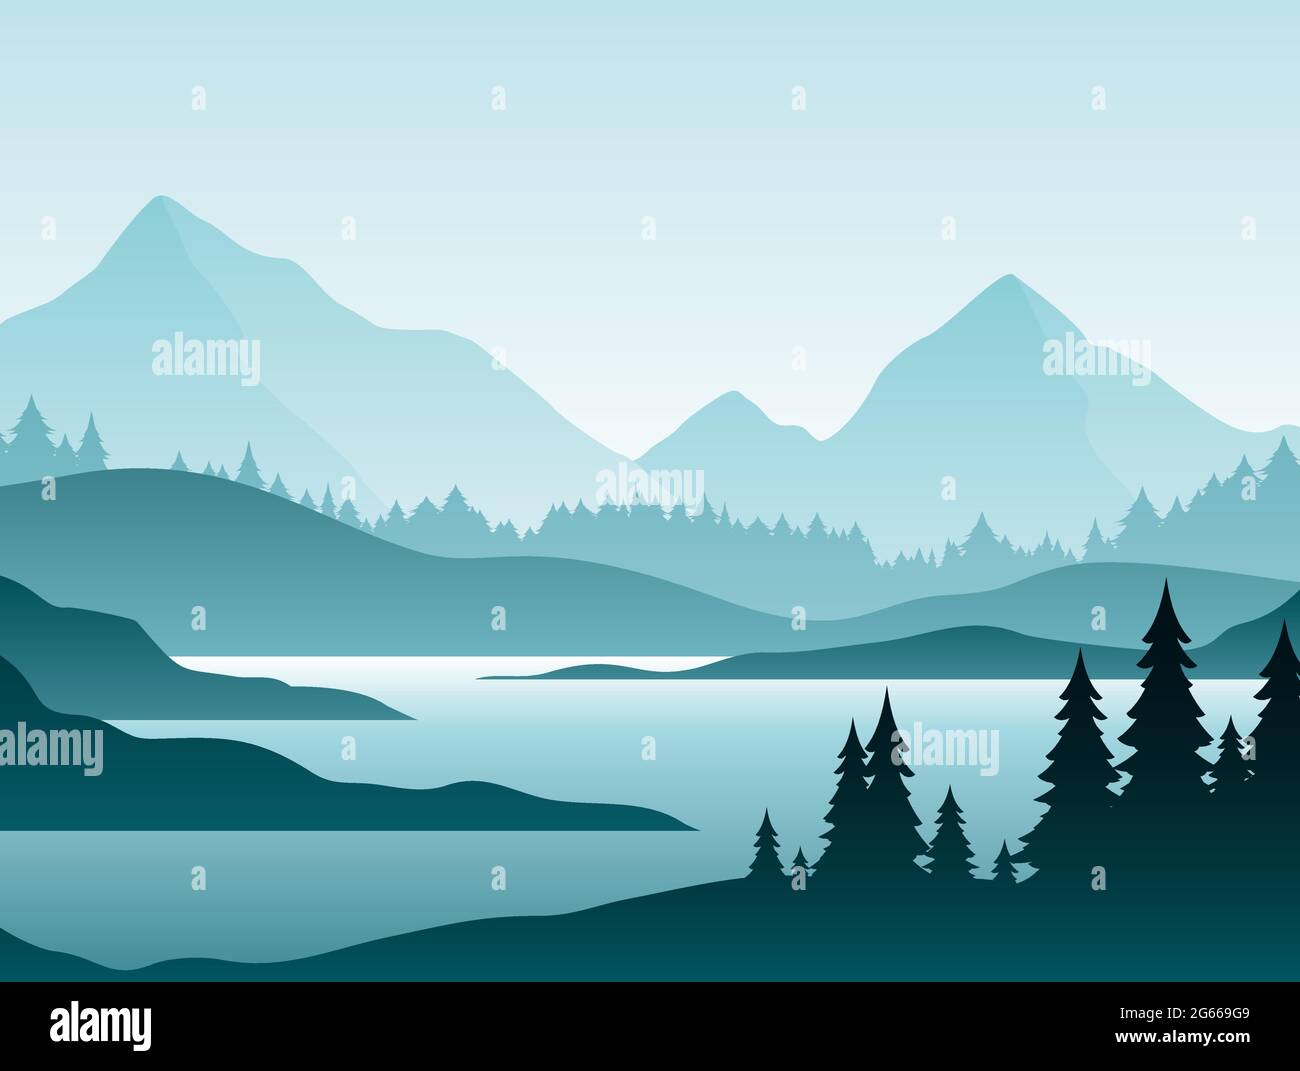 Illustration vectorielle plate de paysage brumeux de forêt. Paysage de la nature avec des sapins et des silhouettes de sommets de colline à l'horizon. Vallée de montagne et rivière dans Illustration de Vecteur